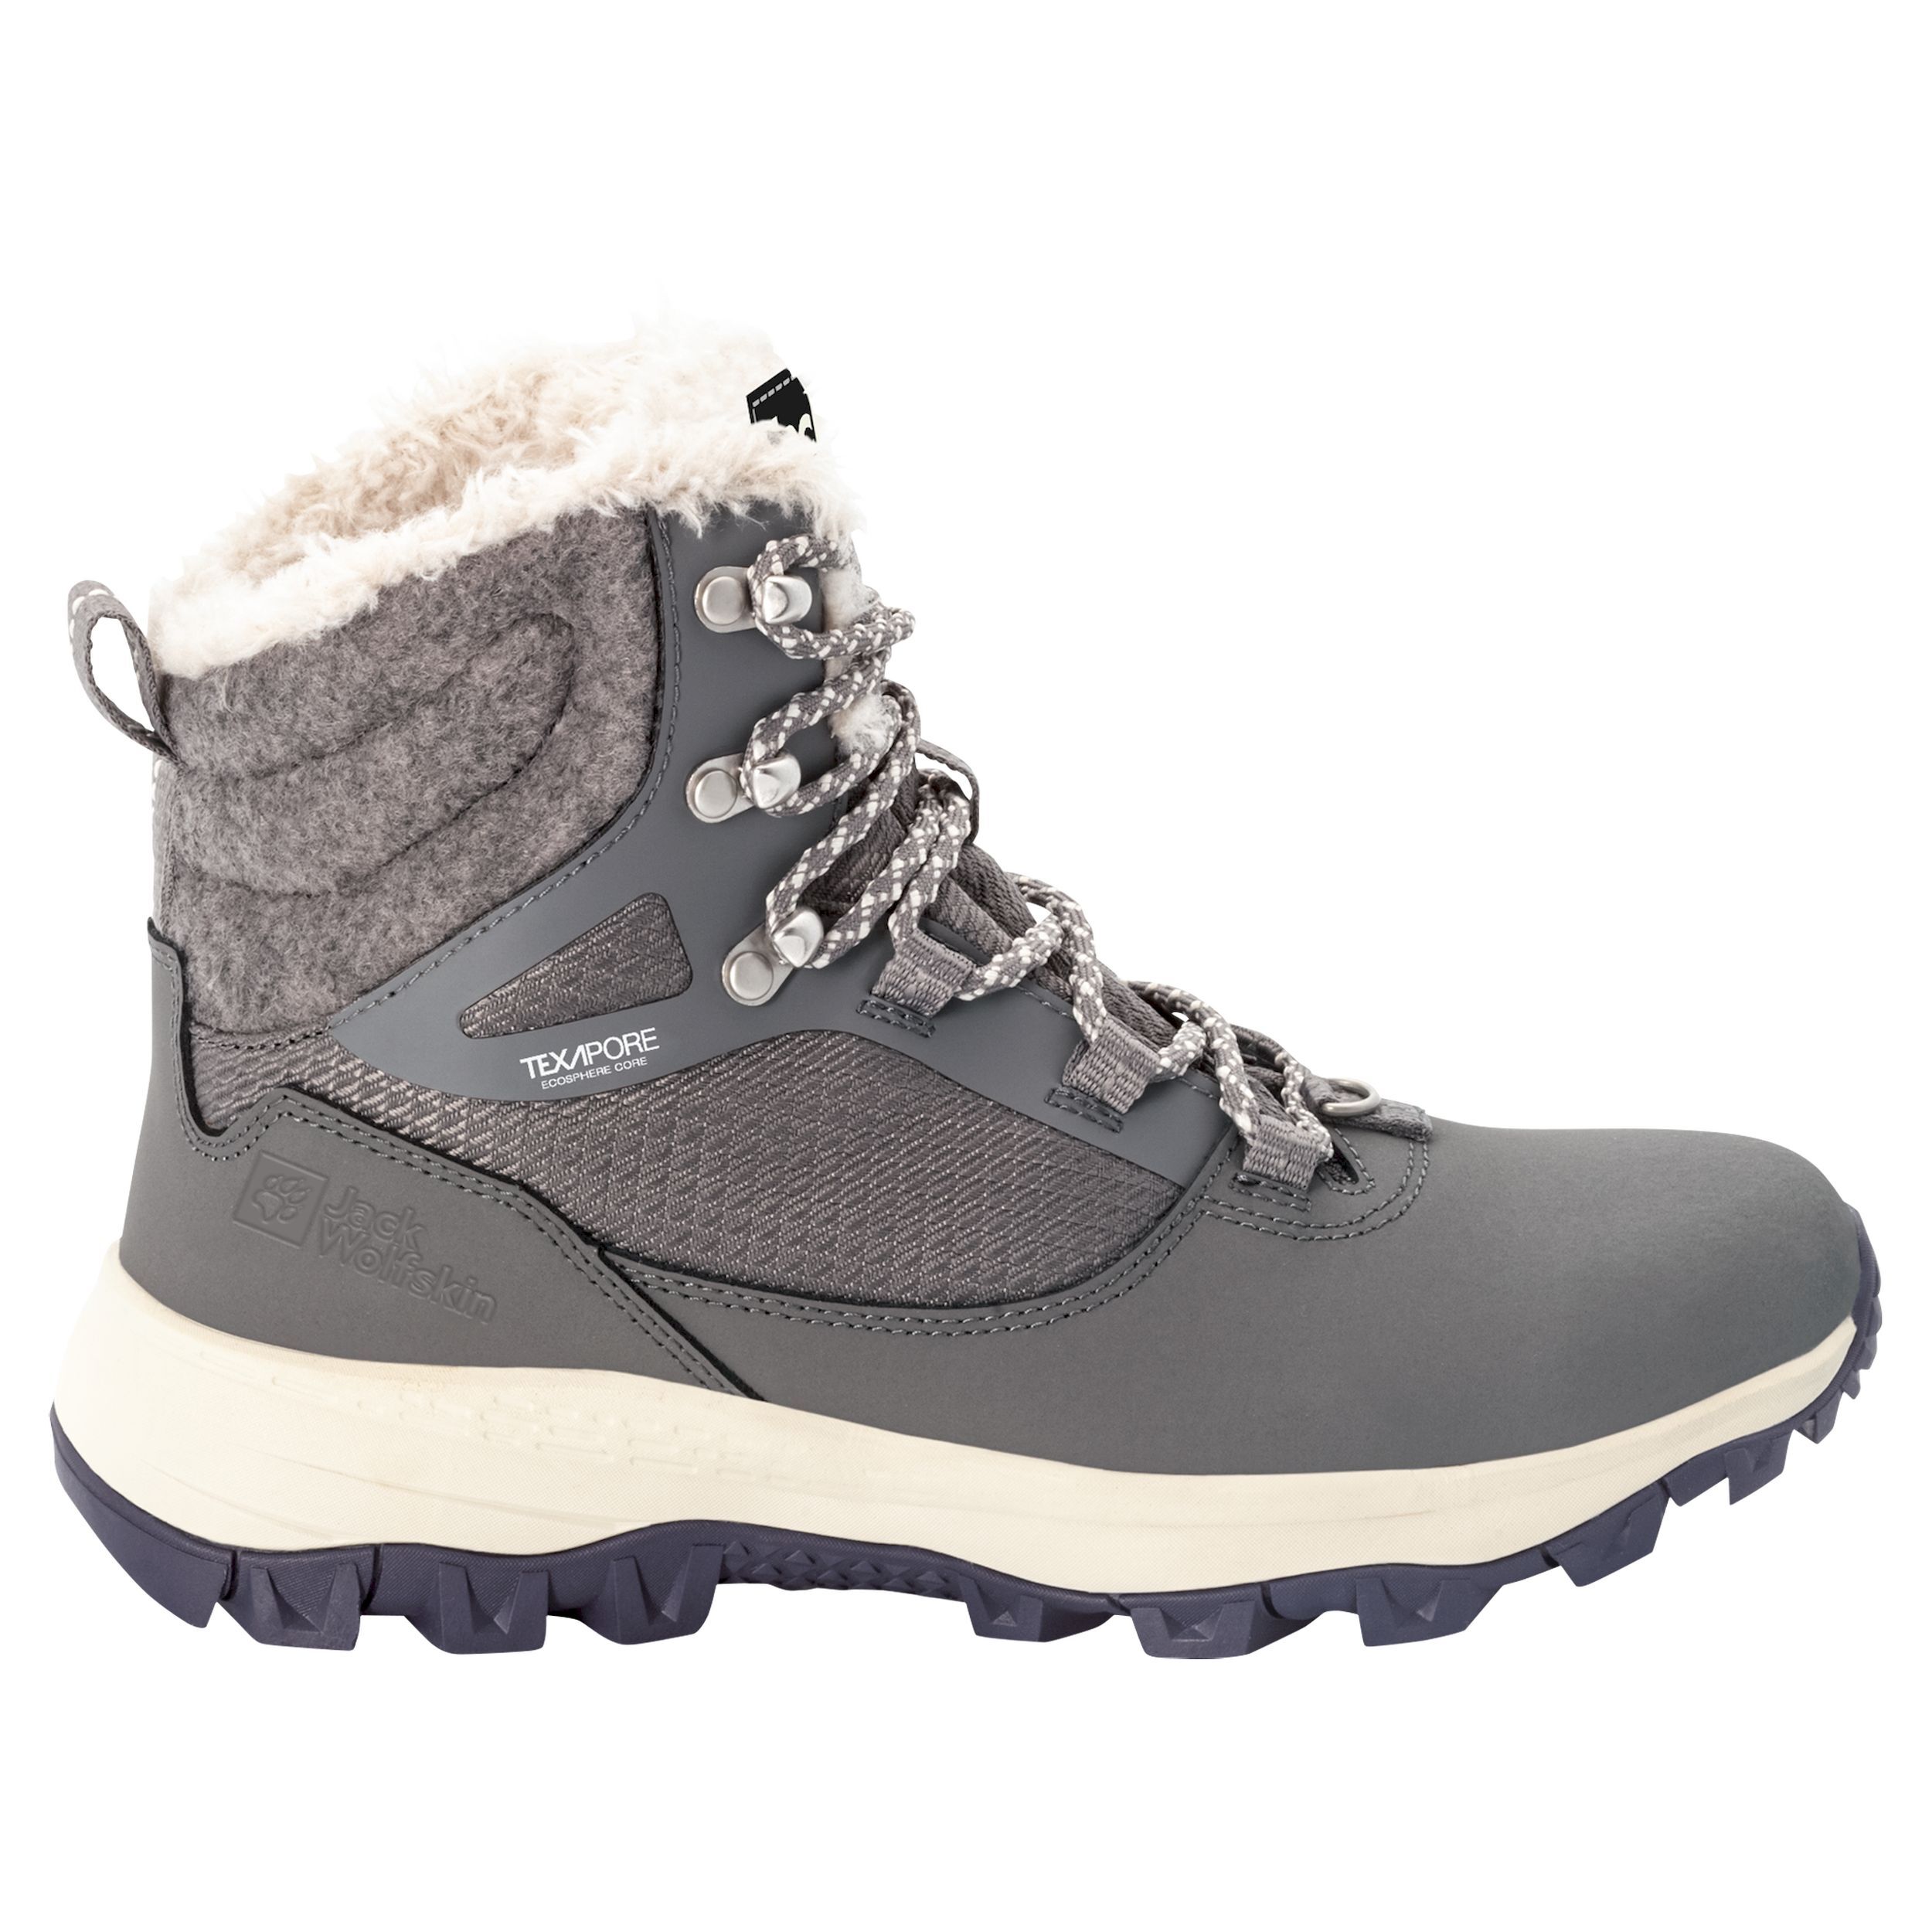 Jack Wolfskin Everquest Texapore High - Winter boots - Women's